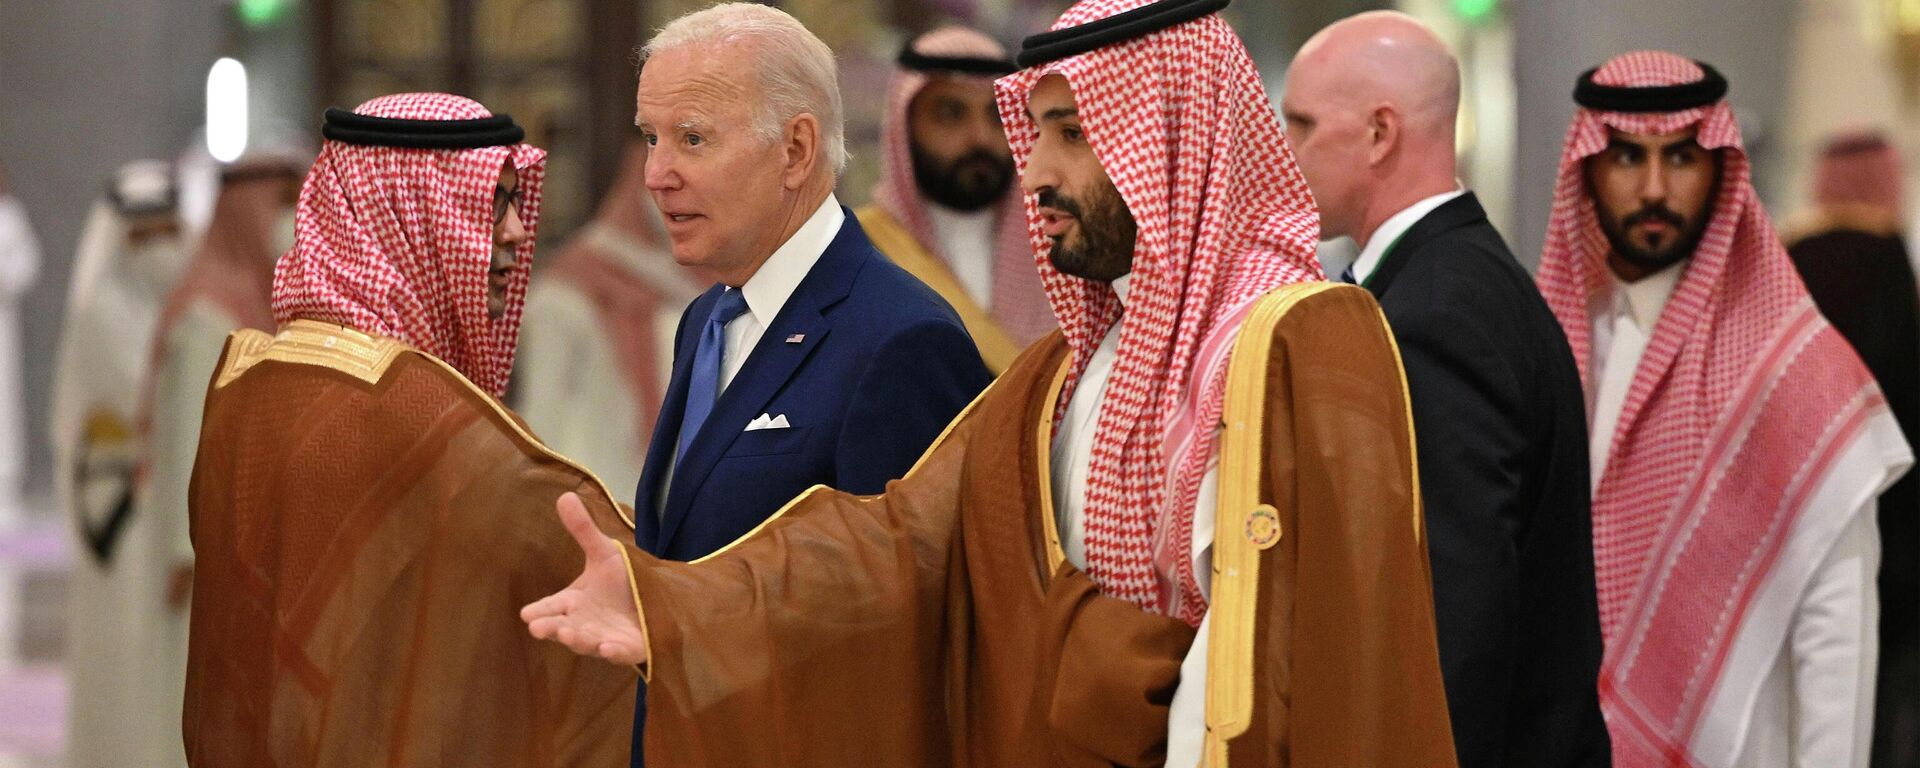 Tổng thống Hoa Kỳ Joe Biden và Thái tử Ả Rập Saudi Mohammed bin Salman tại một khách sạn ở Jeddah, Ả Rập Saudi, ngày thứ Bảy 16/7/2022 - Sputnik Việt Nam, 1920, 22.07.2022